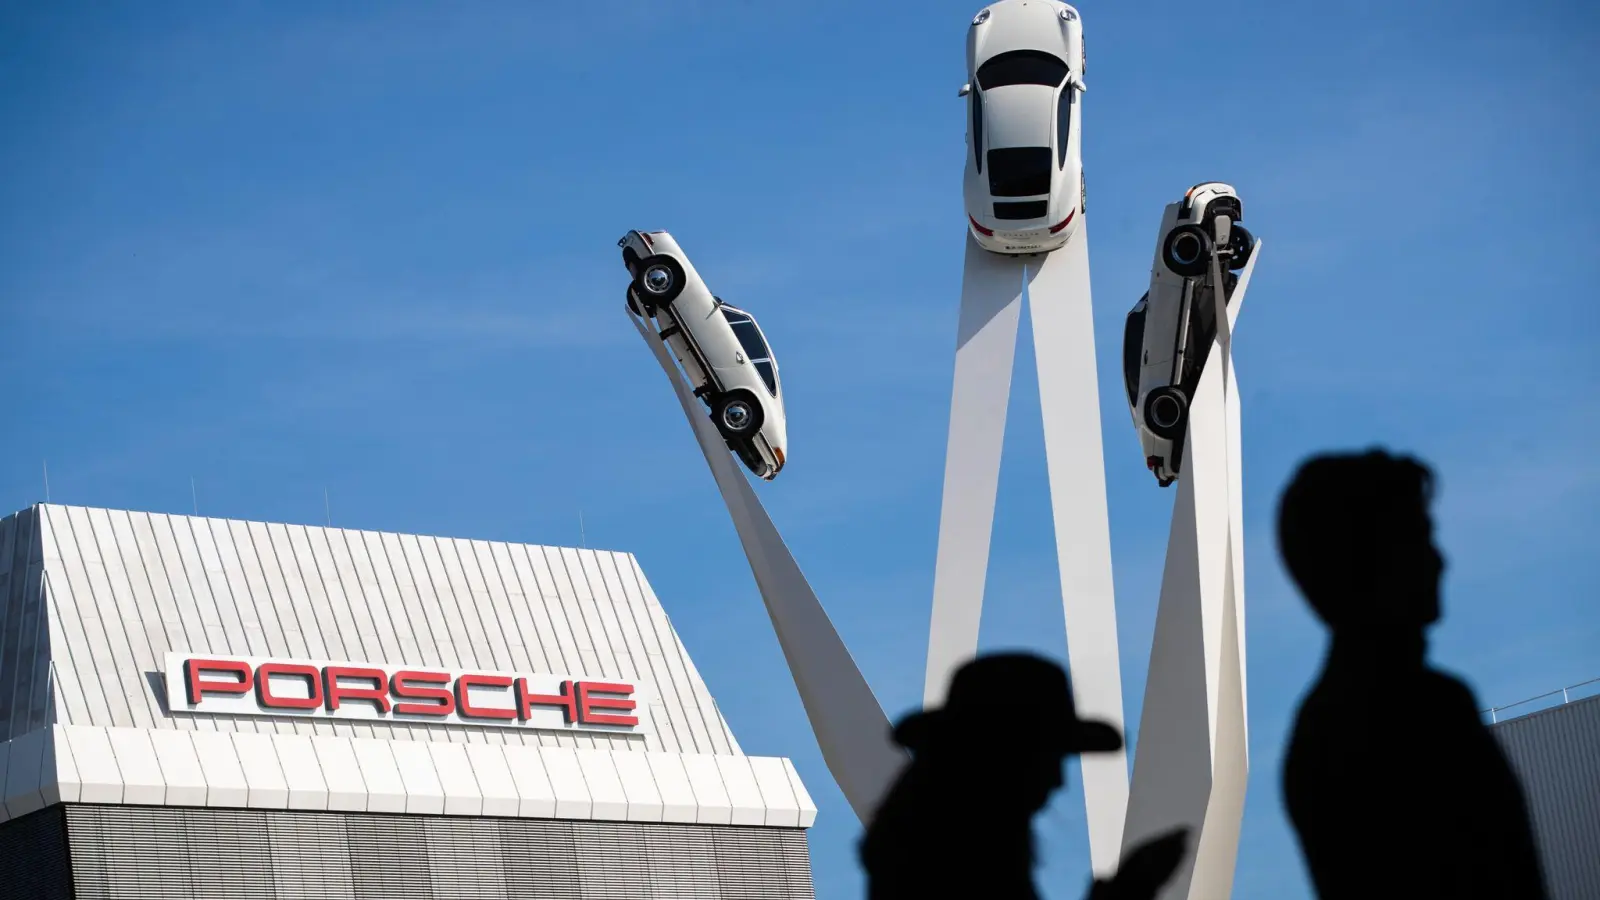 Die 911-Fahrzeuge zählen bei Porsche zu den Klassikern. (Foto: Christoph Schmidt/dpa)